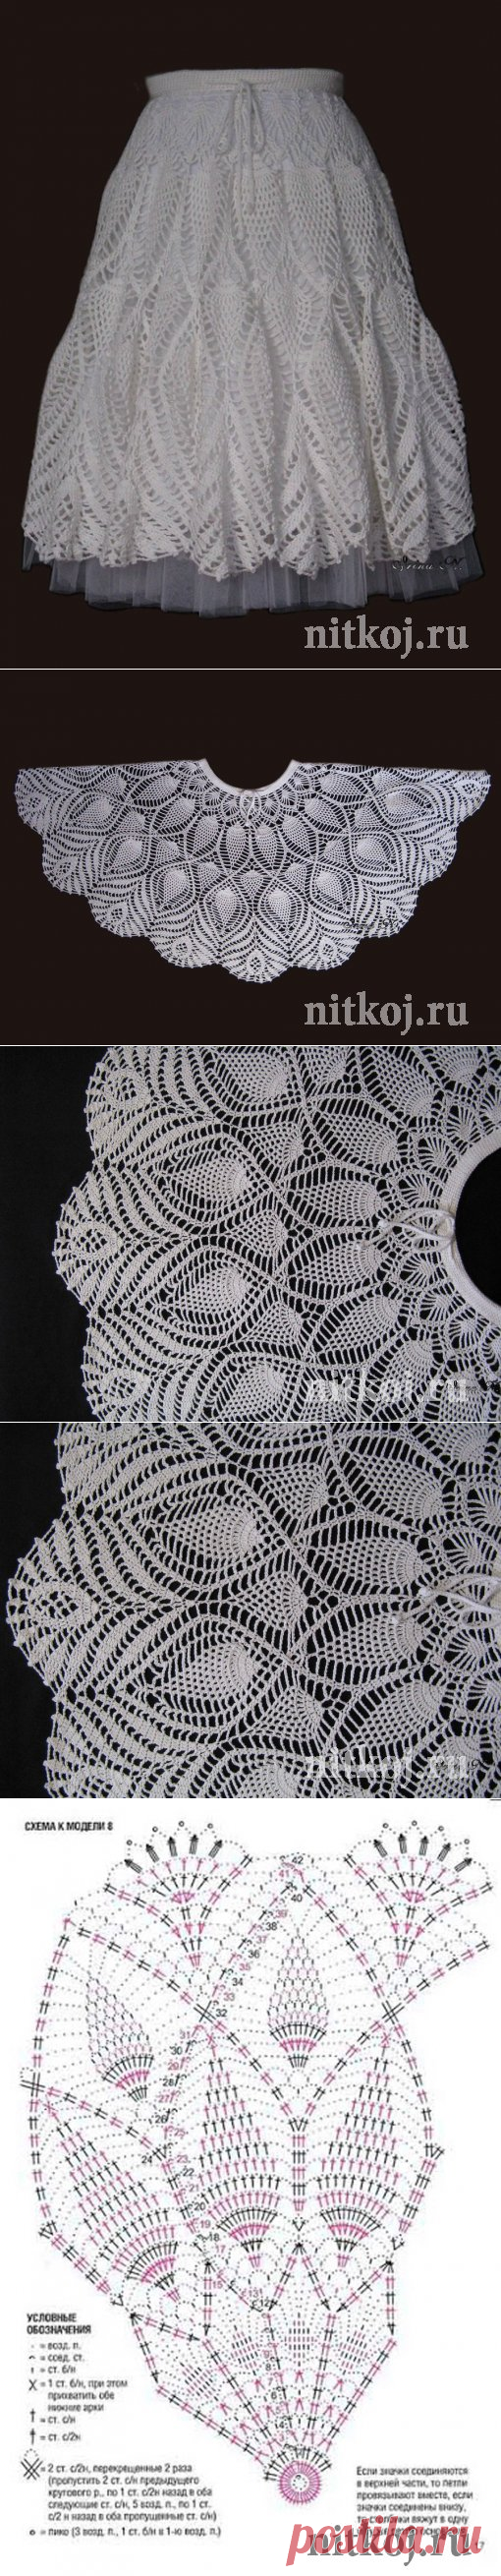 Юбка ИрЛандии » Ниткой - вязаные вещи для вашего дома, вязание крючком, вязание спицами, схемы вязания